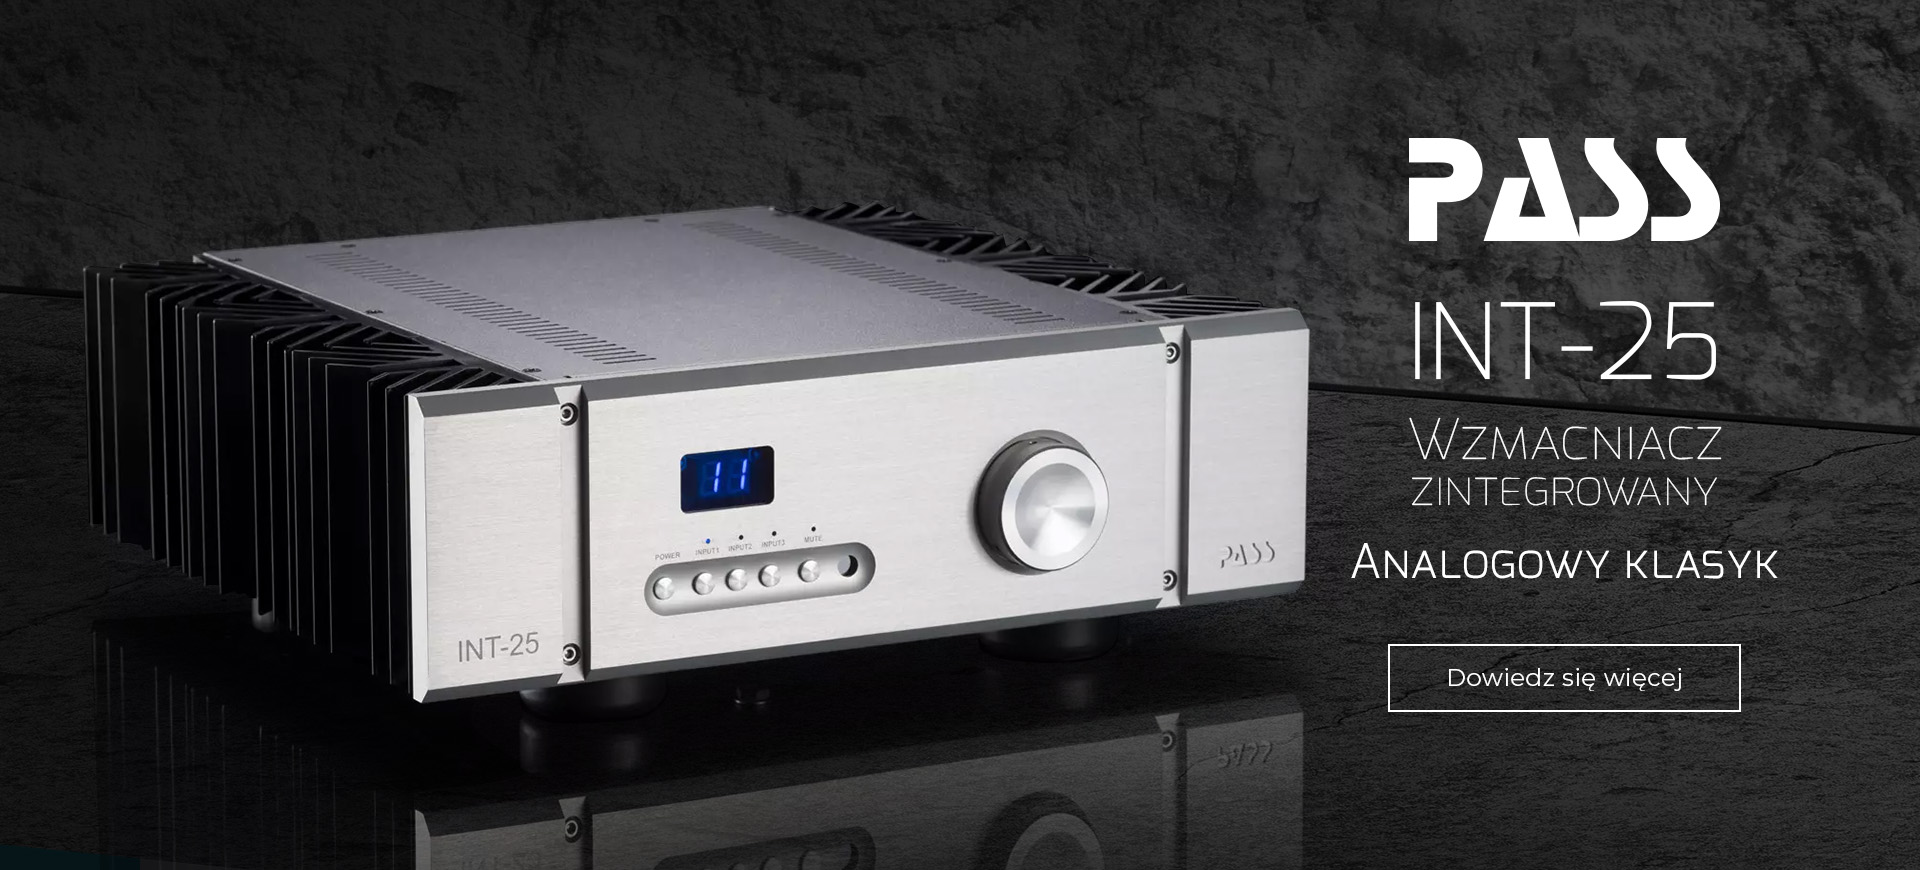 Antrax Audio - najnowszy sprzęt Audio, HiFi, High End